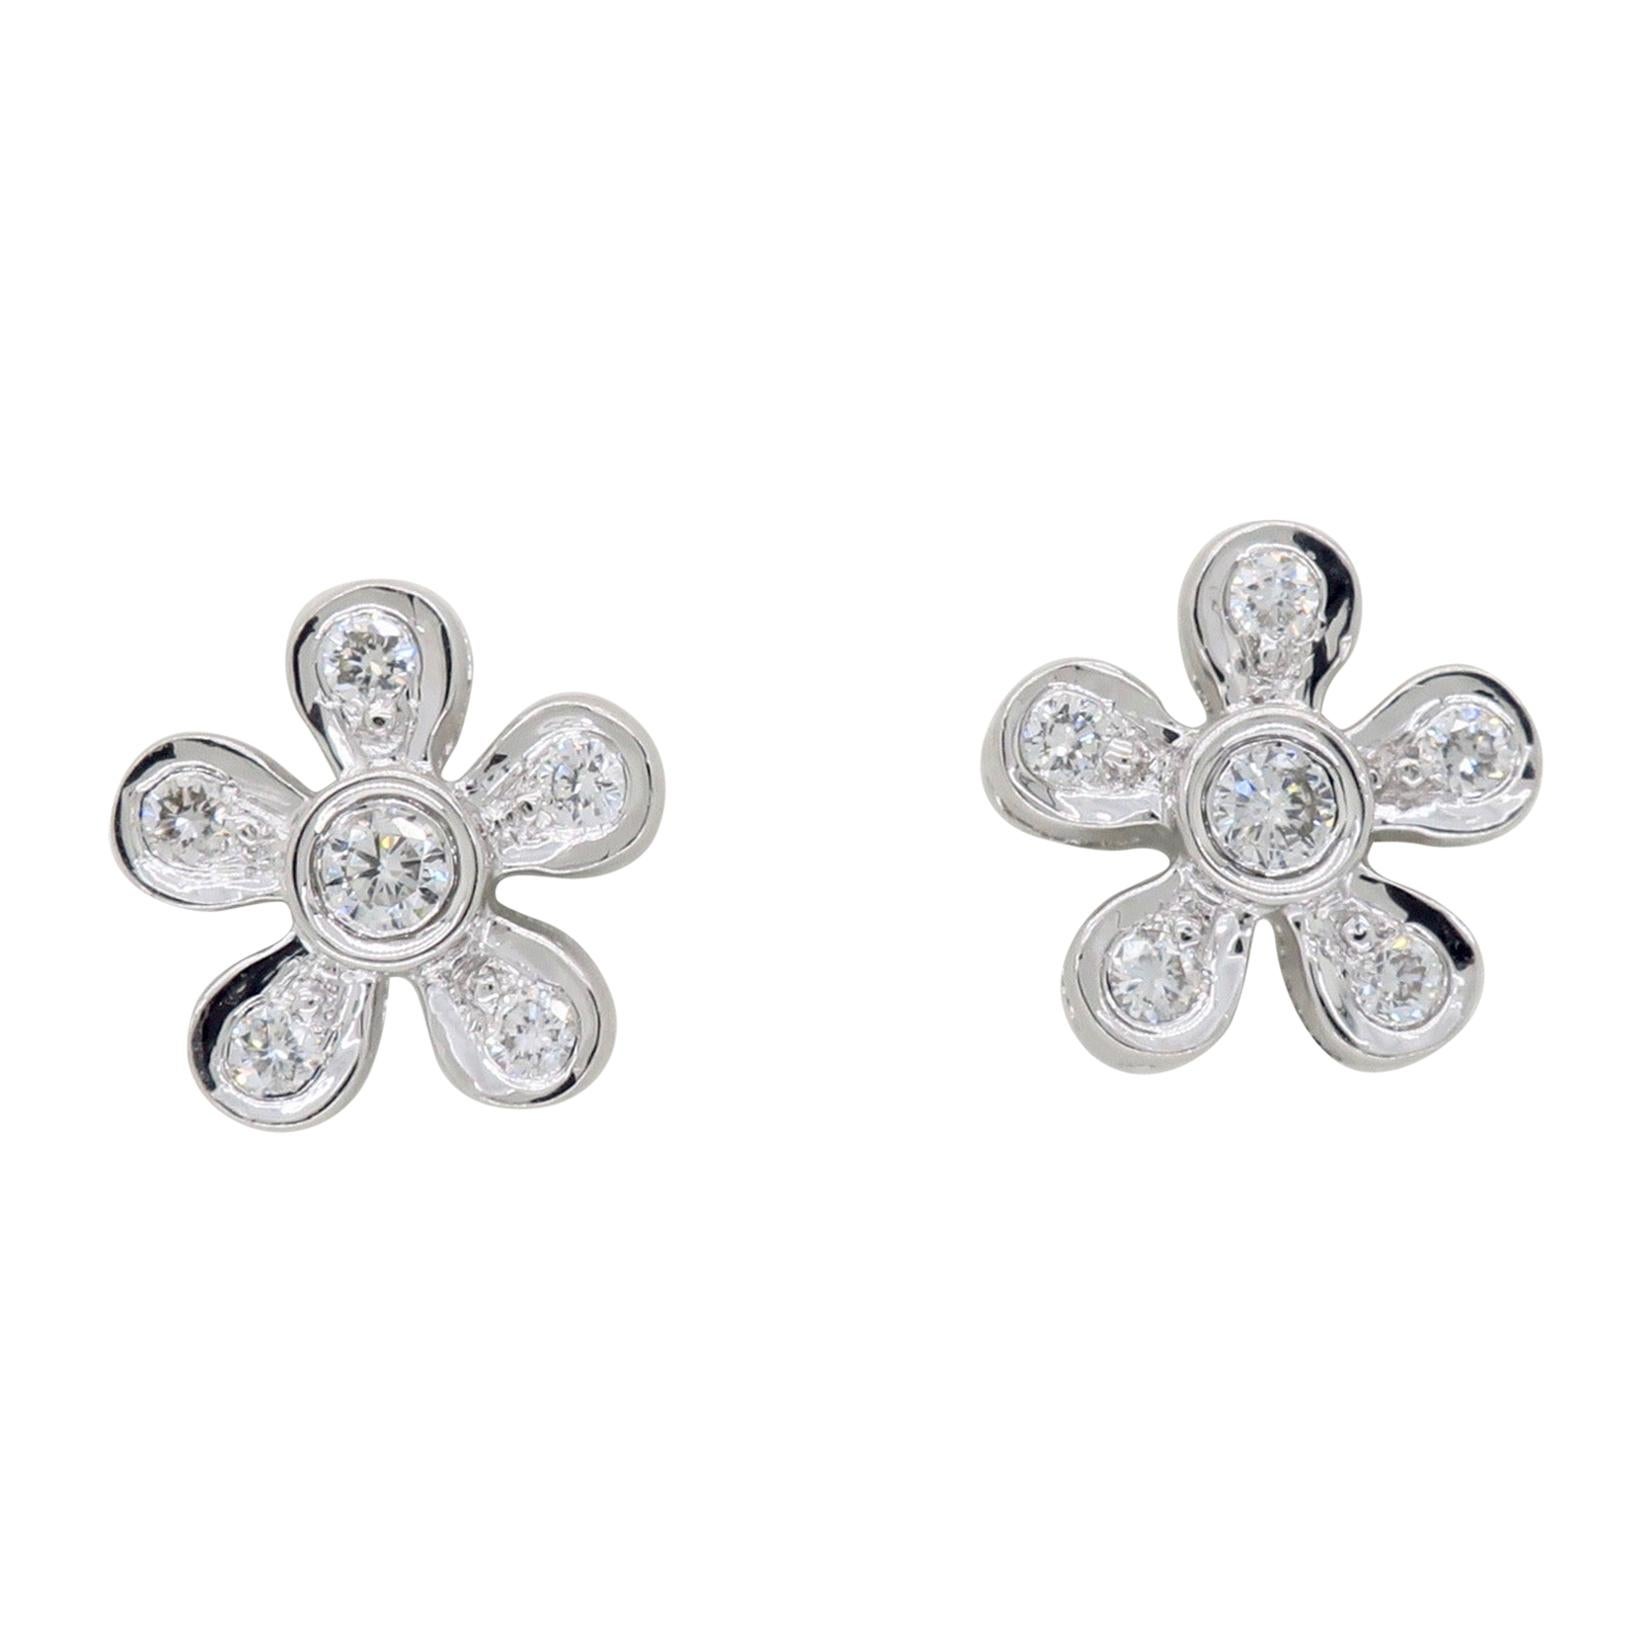 Daisy Diamond Stud Earrings in 18 Karat White Gold